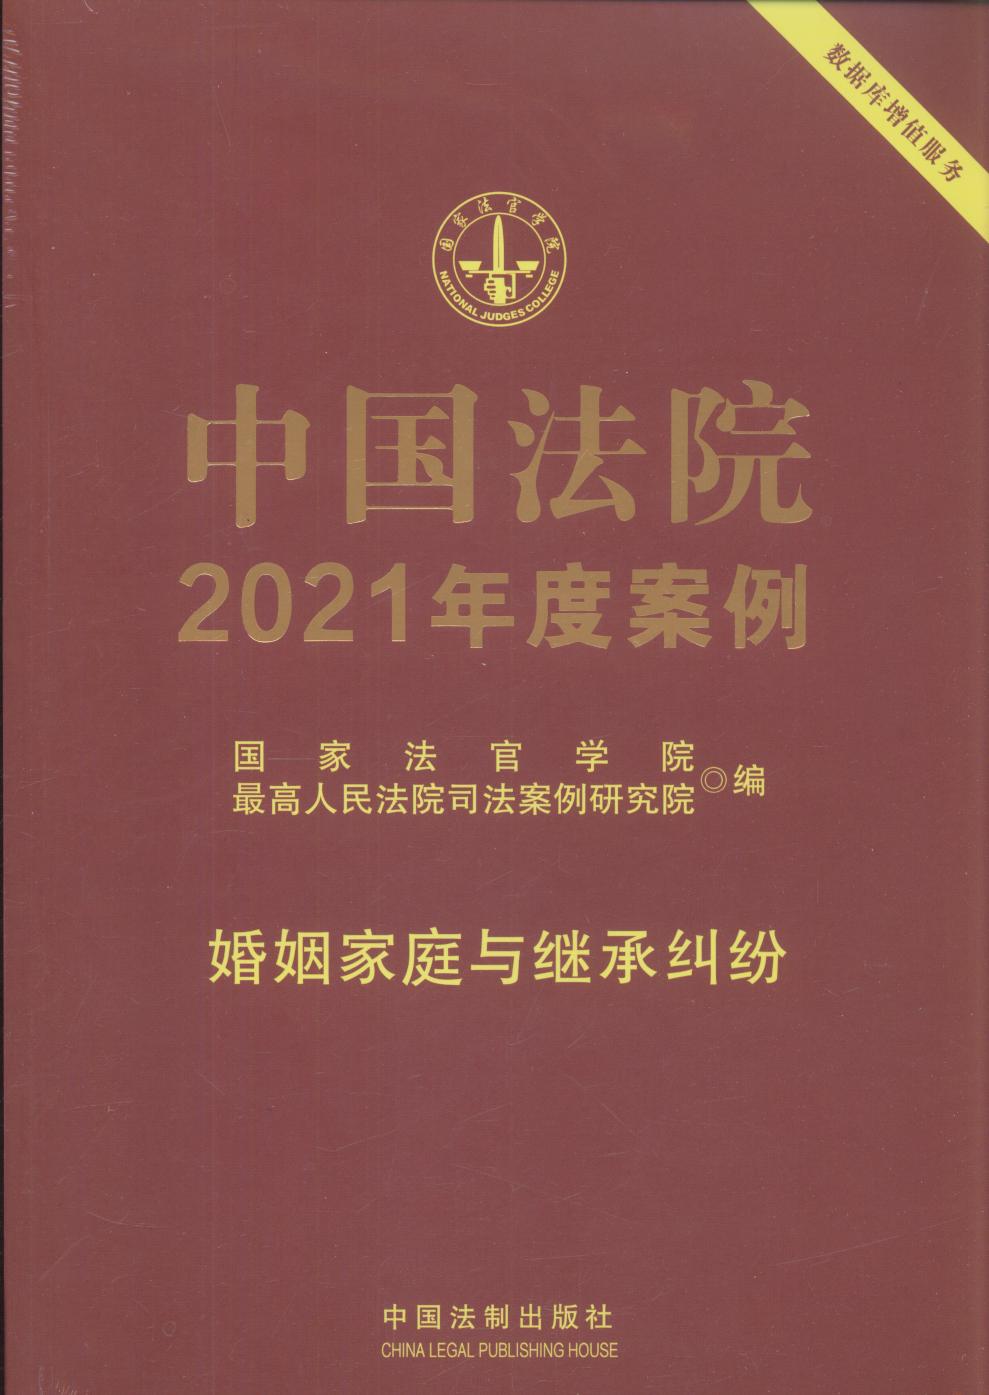 中国法院2021年度案例【1】婚姻家庭与继承纠纷